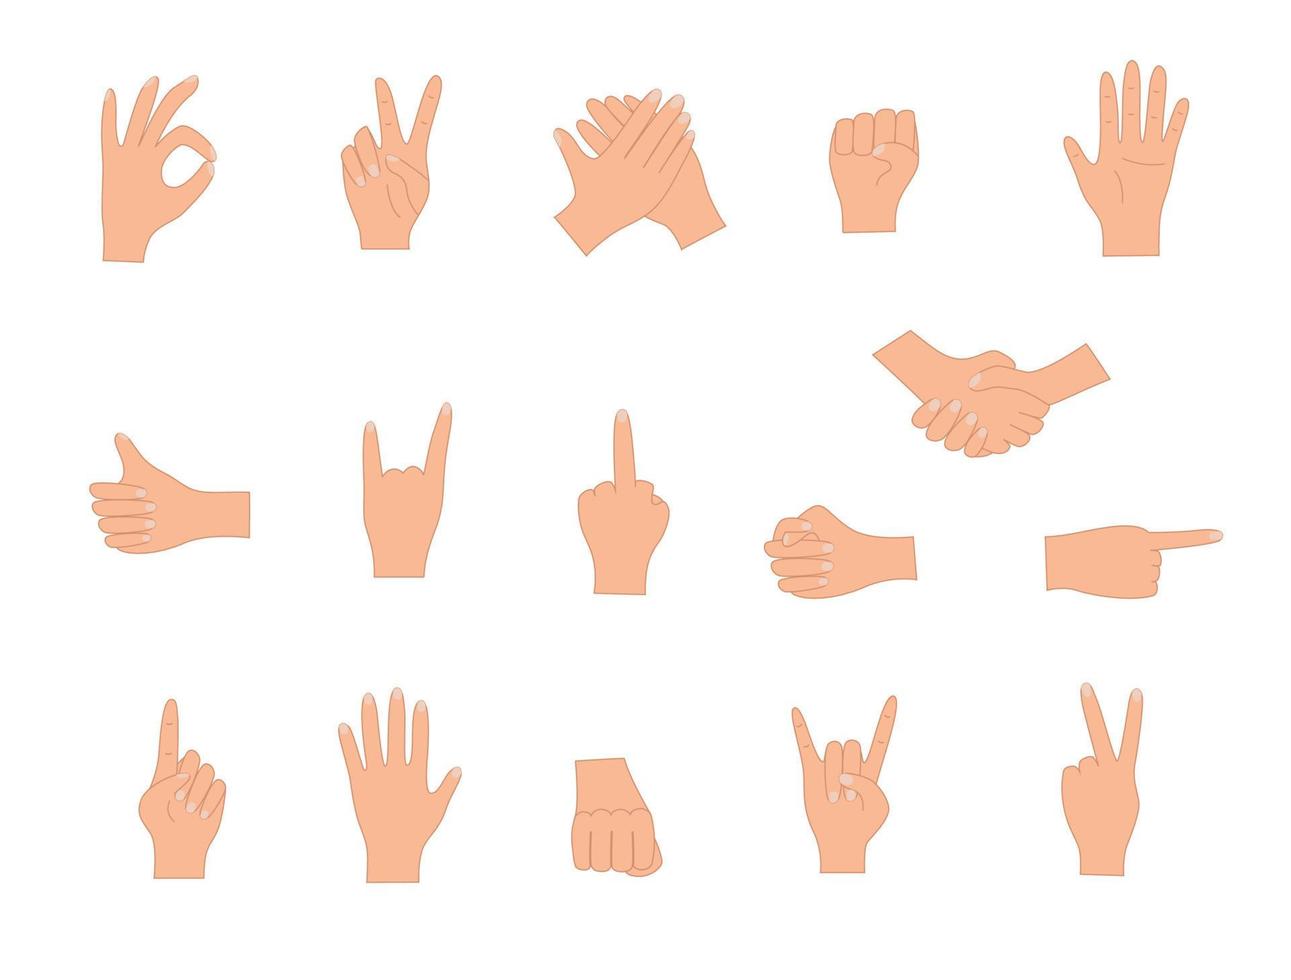 gesti delle mani, illustrazione vettoriale set di icone di vari segni della mano.